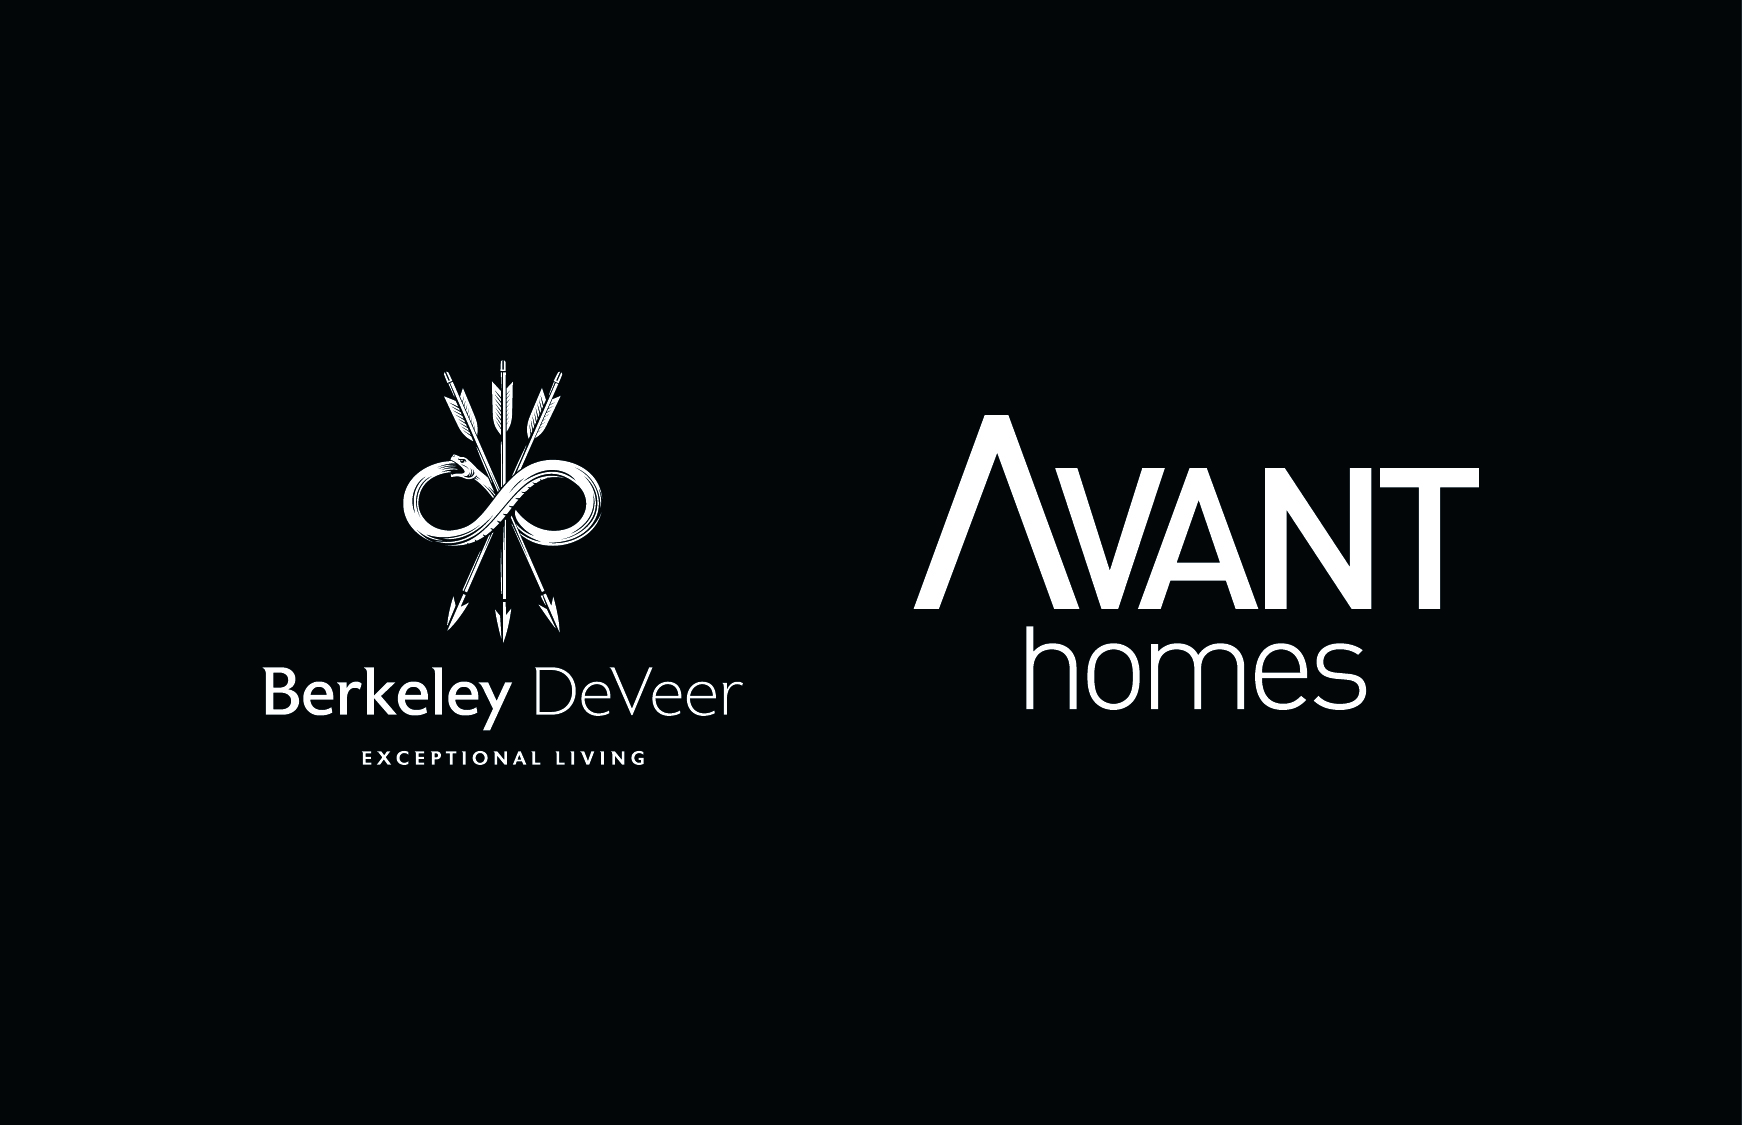 Berkeley DeVeer acquires leading homebuilder Avant Homes 